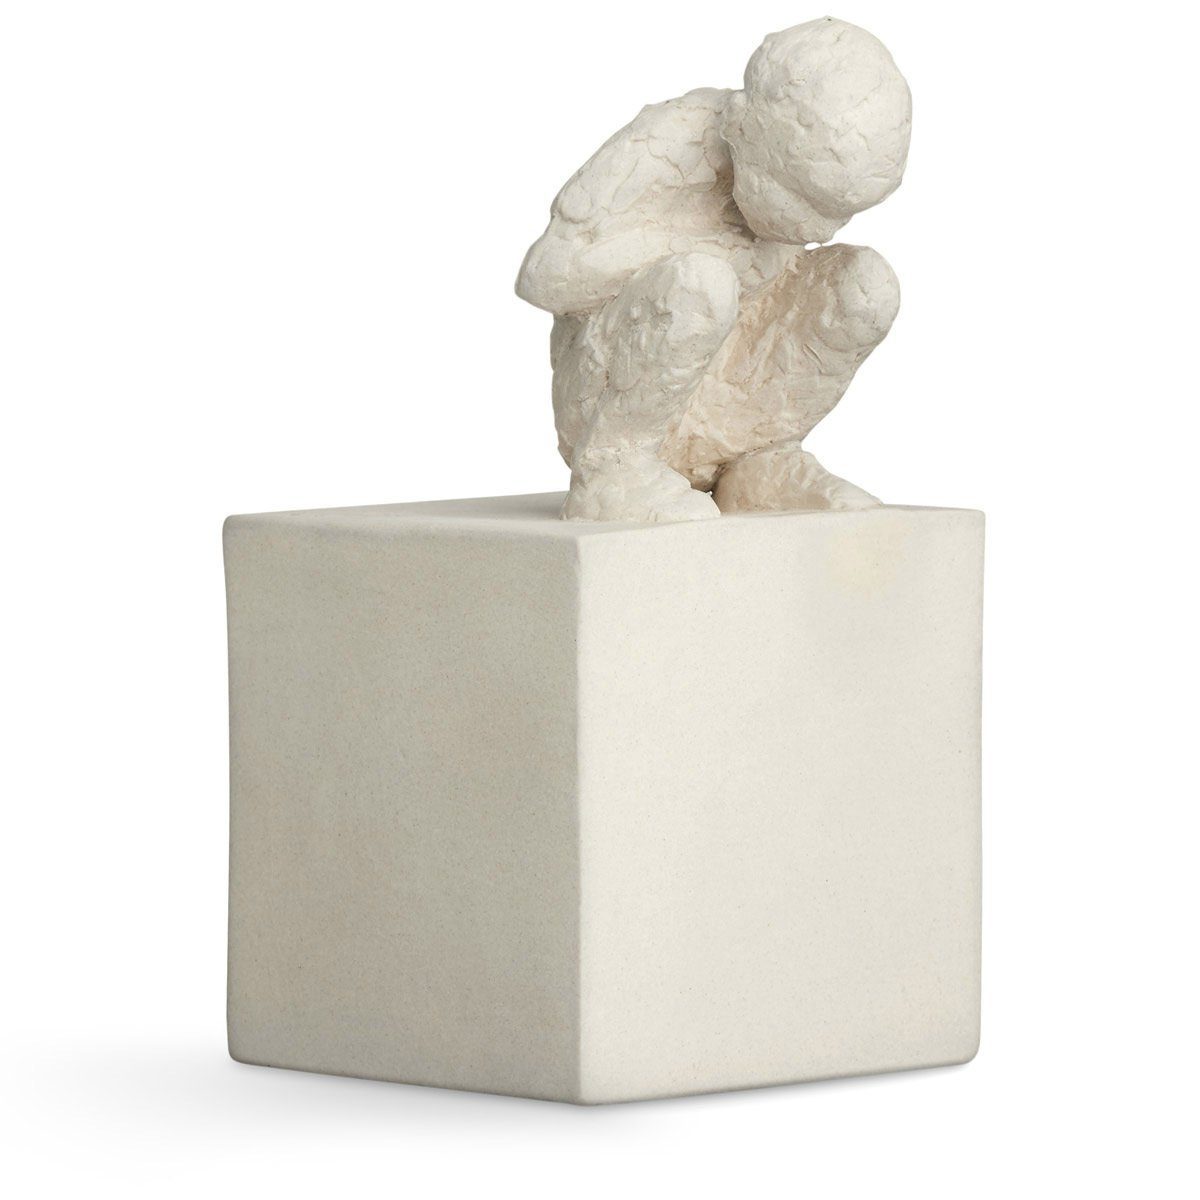 Kähler Dekofigur The Serie 'Character' One Keramik von der Malene Bjelke Bildhauerin aus Neugierige); Skulptur Curious (Der